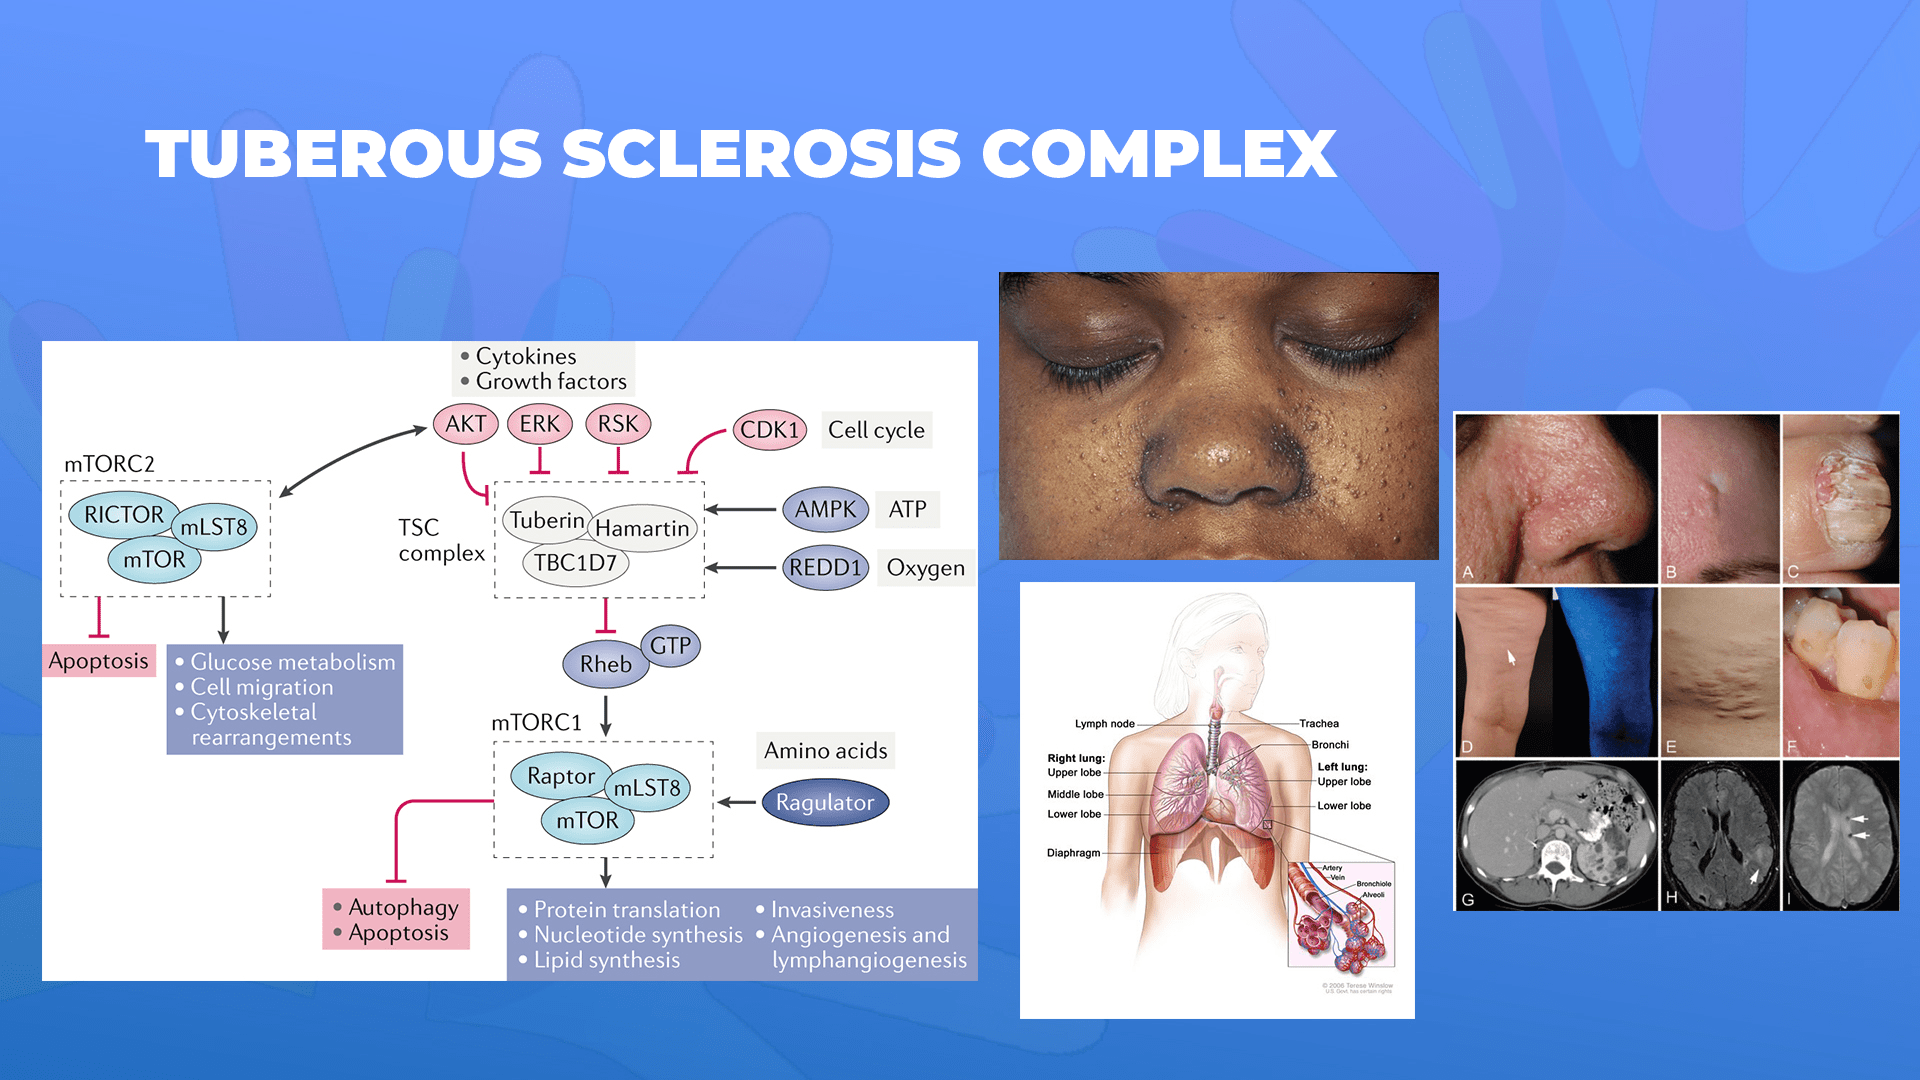 Ги запознаваме ретките болести: Туберозна склероза комплекс – Tuberous sclerosis complex